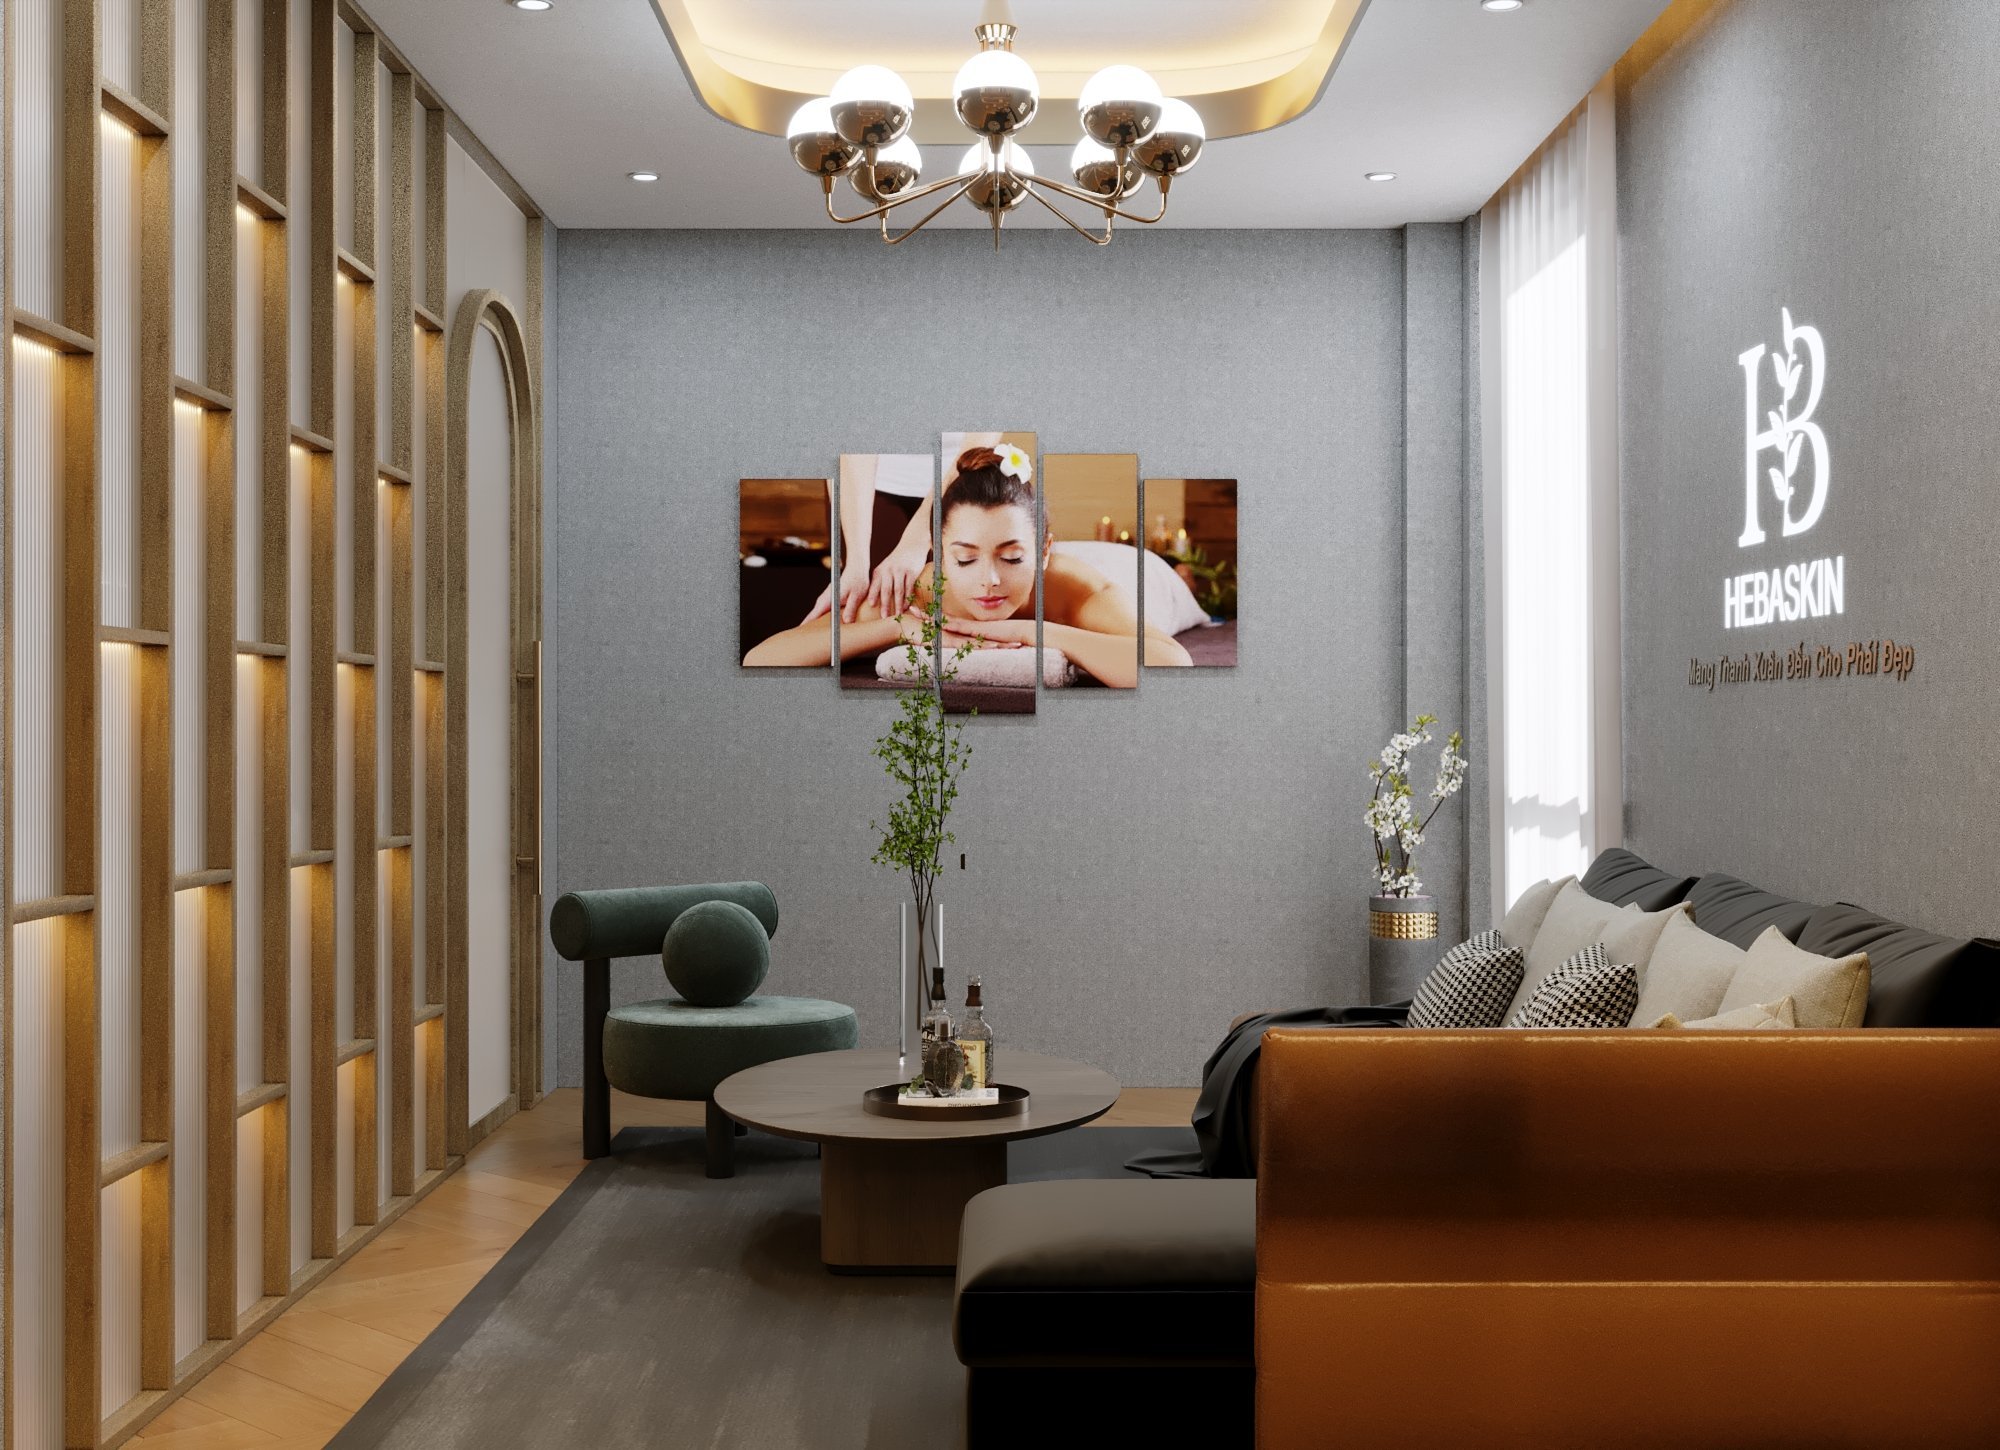 Thiết kế nội thất Spa tại Hà Nội Spa HeBaSkin 1665526214 12